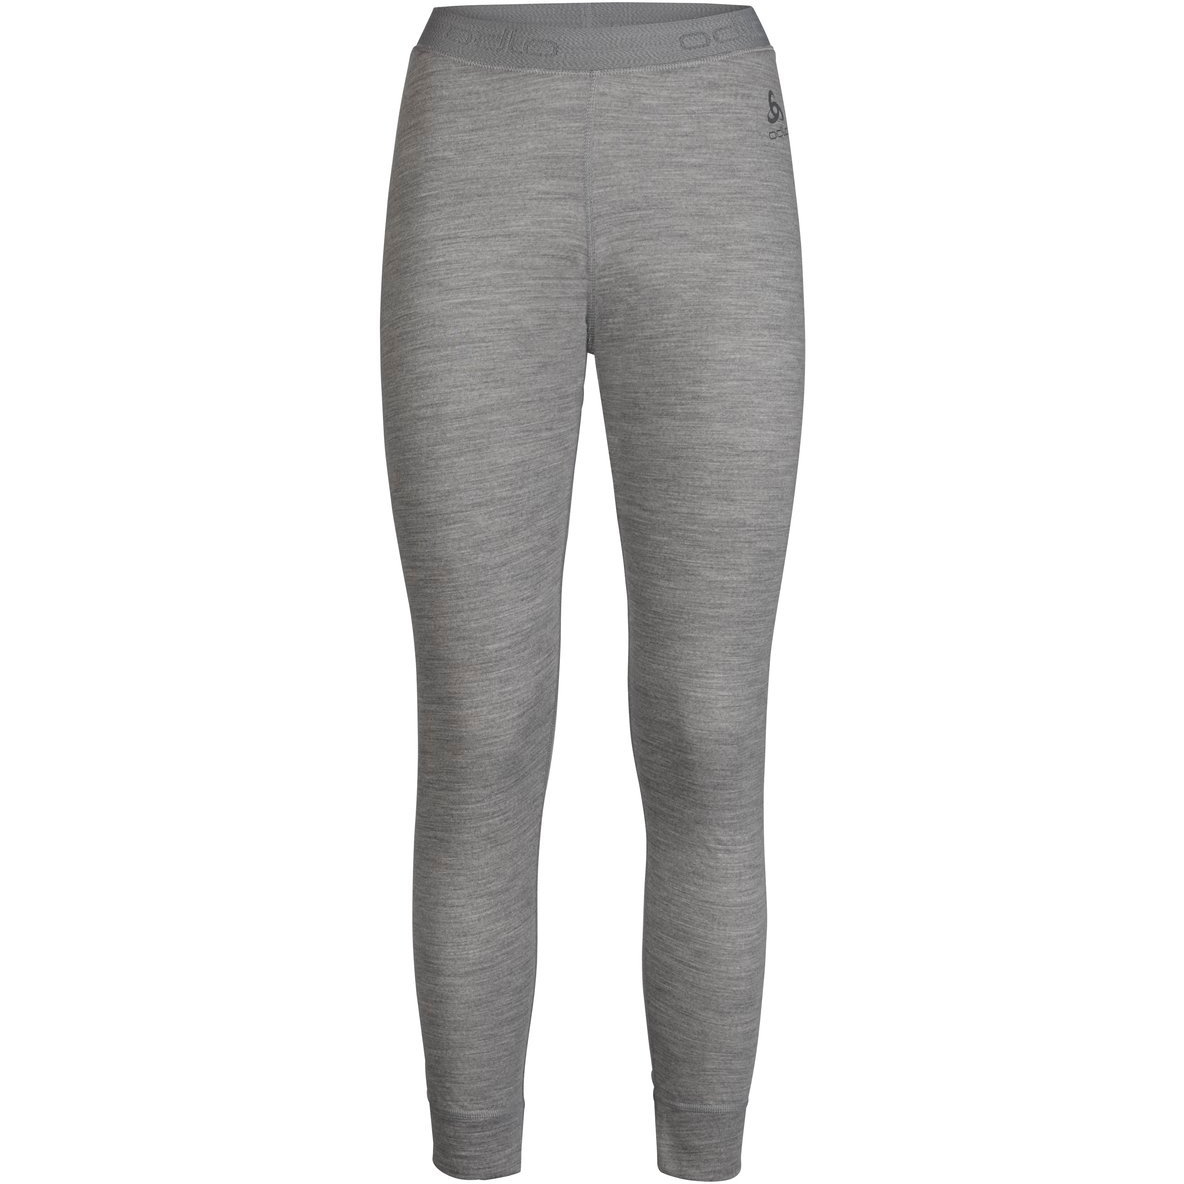 Produktbild von Odlo Natural 100% Merino Warm Unterhose Damen - grey melange - grey melange